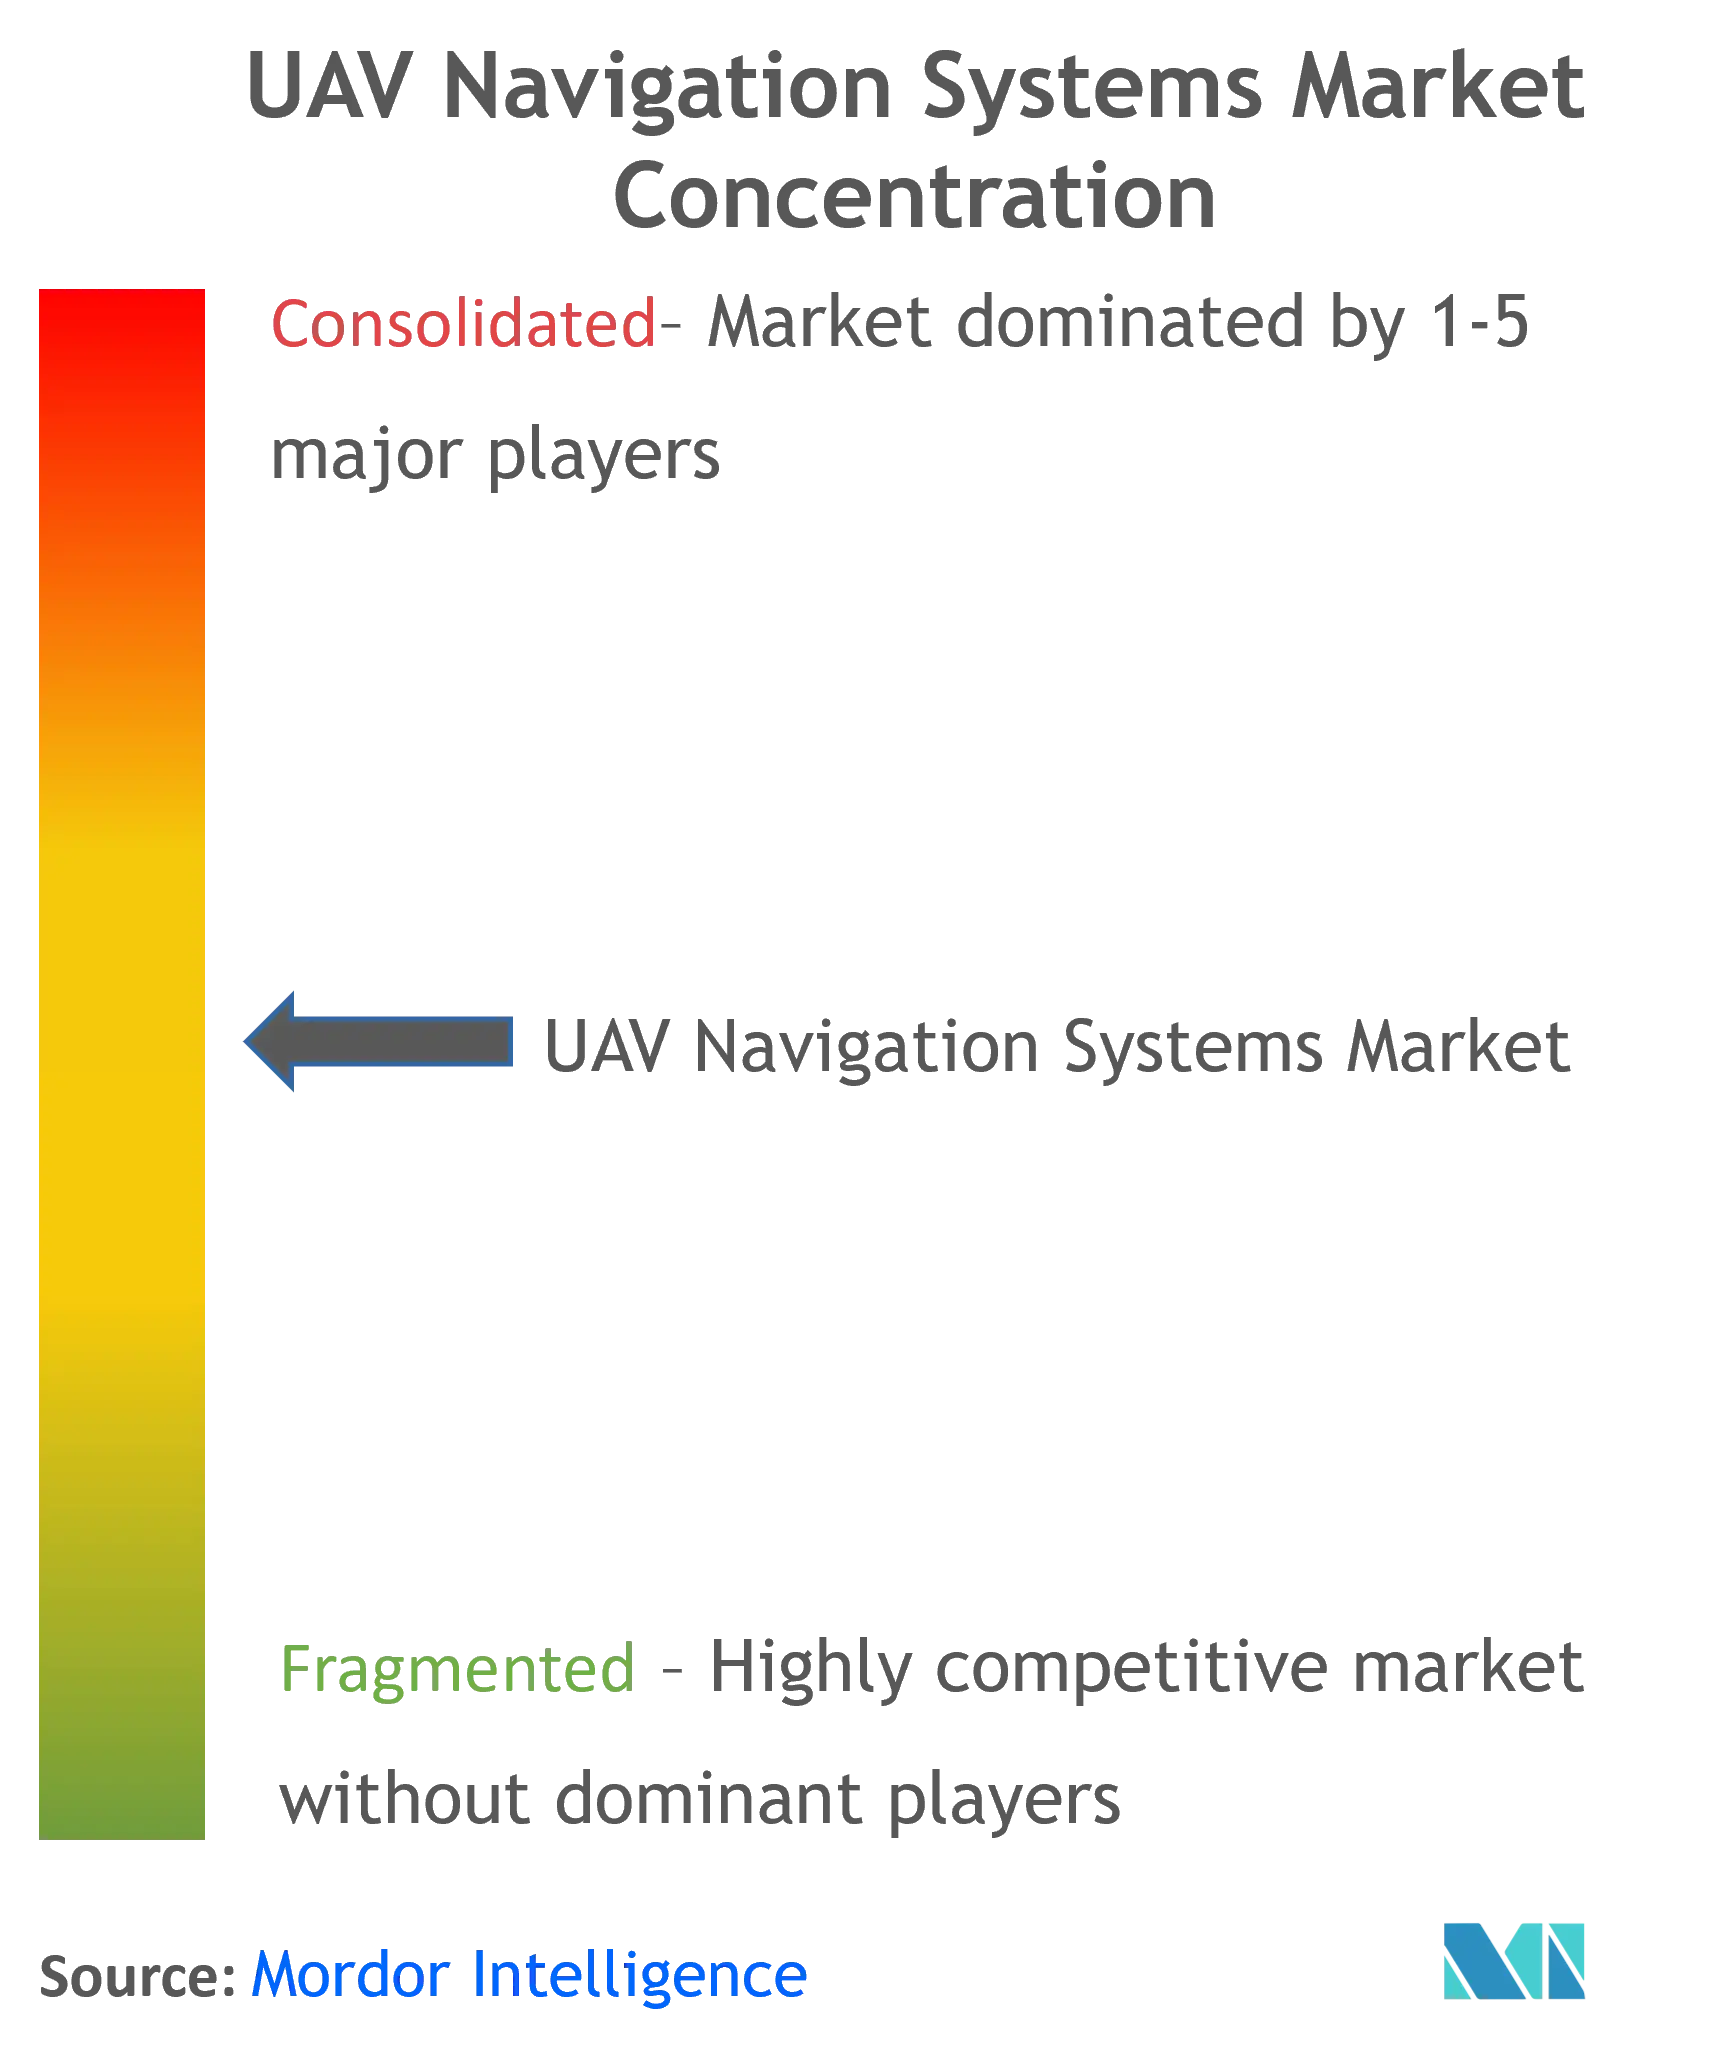 UAV Navigation Systems Market Concentration